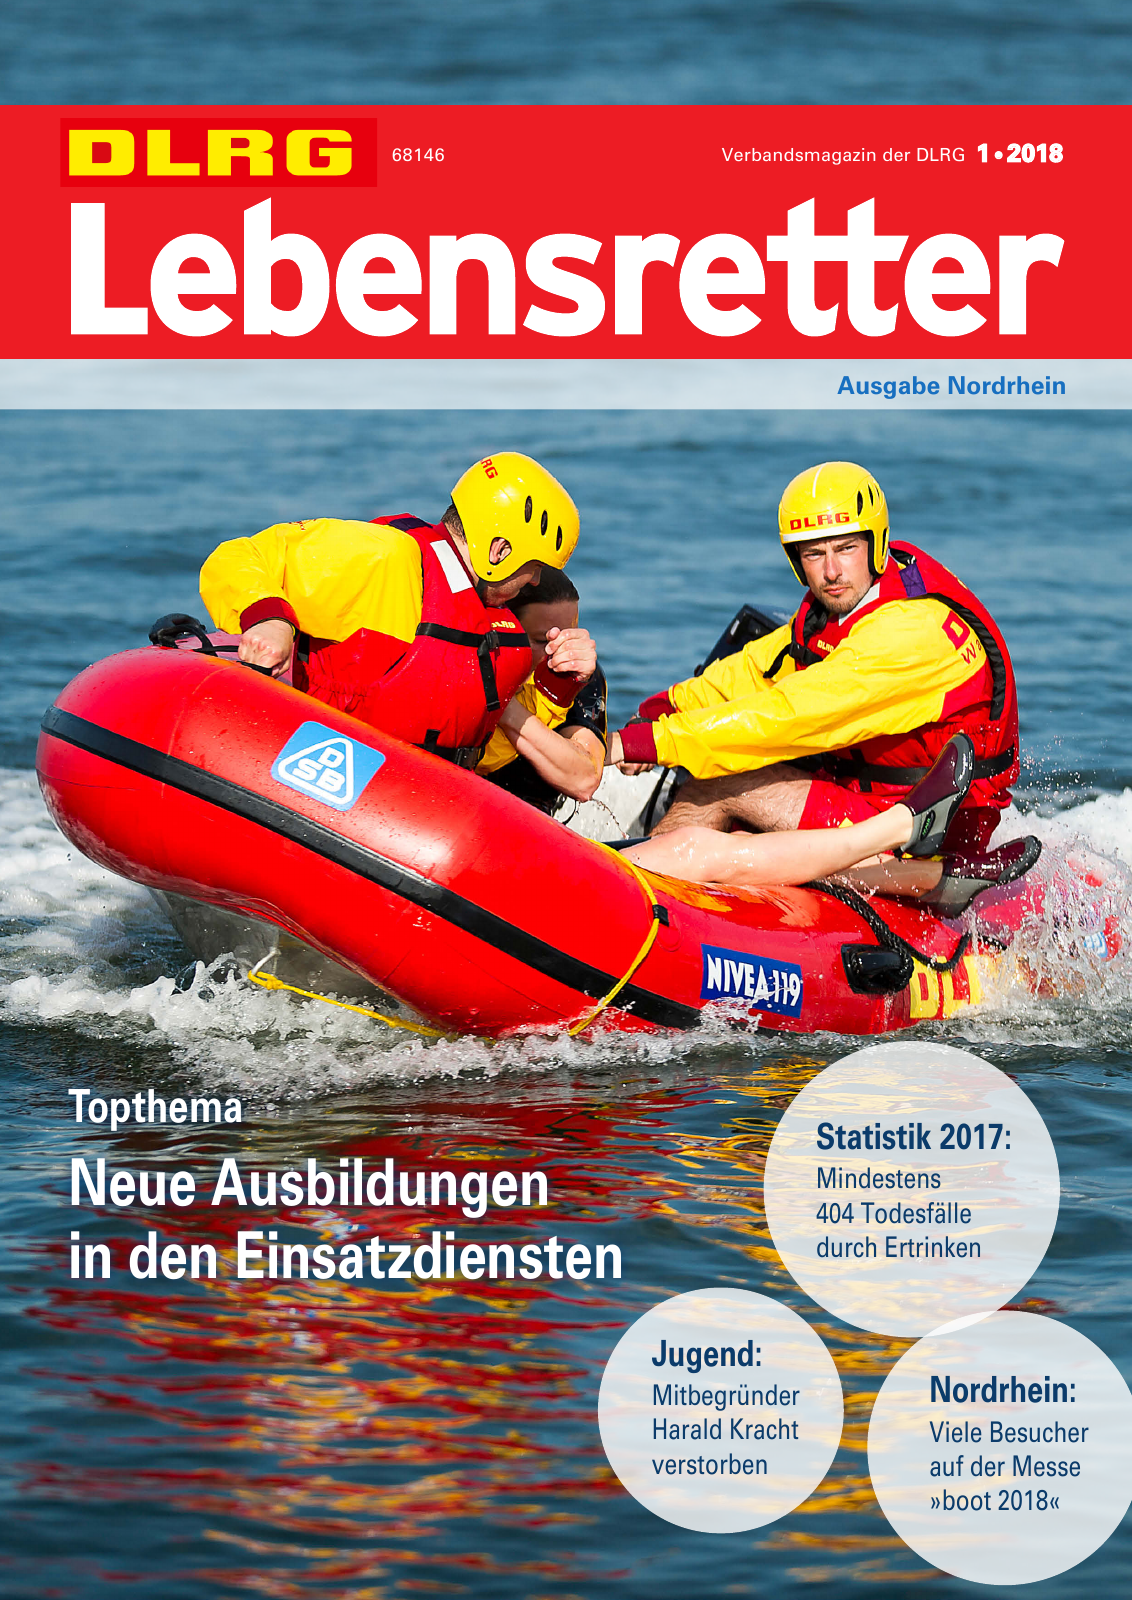 Vorschau Lebensretter 1/2018 - Regionalausgabe Nordrhein Seite 1